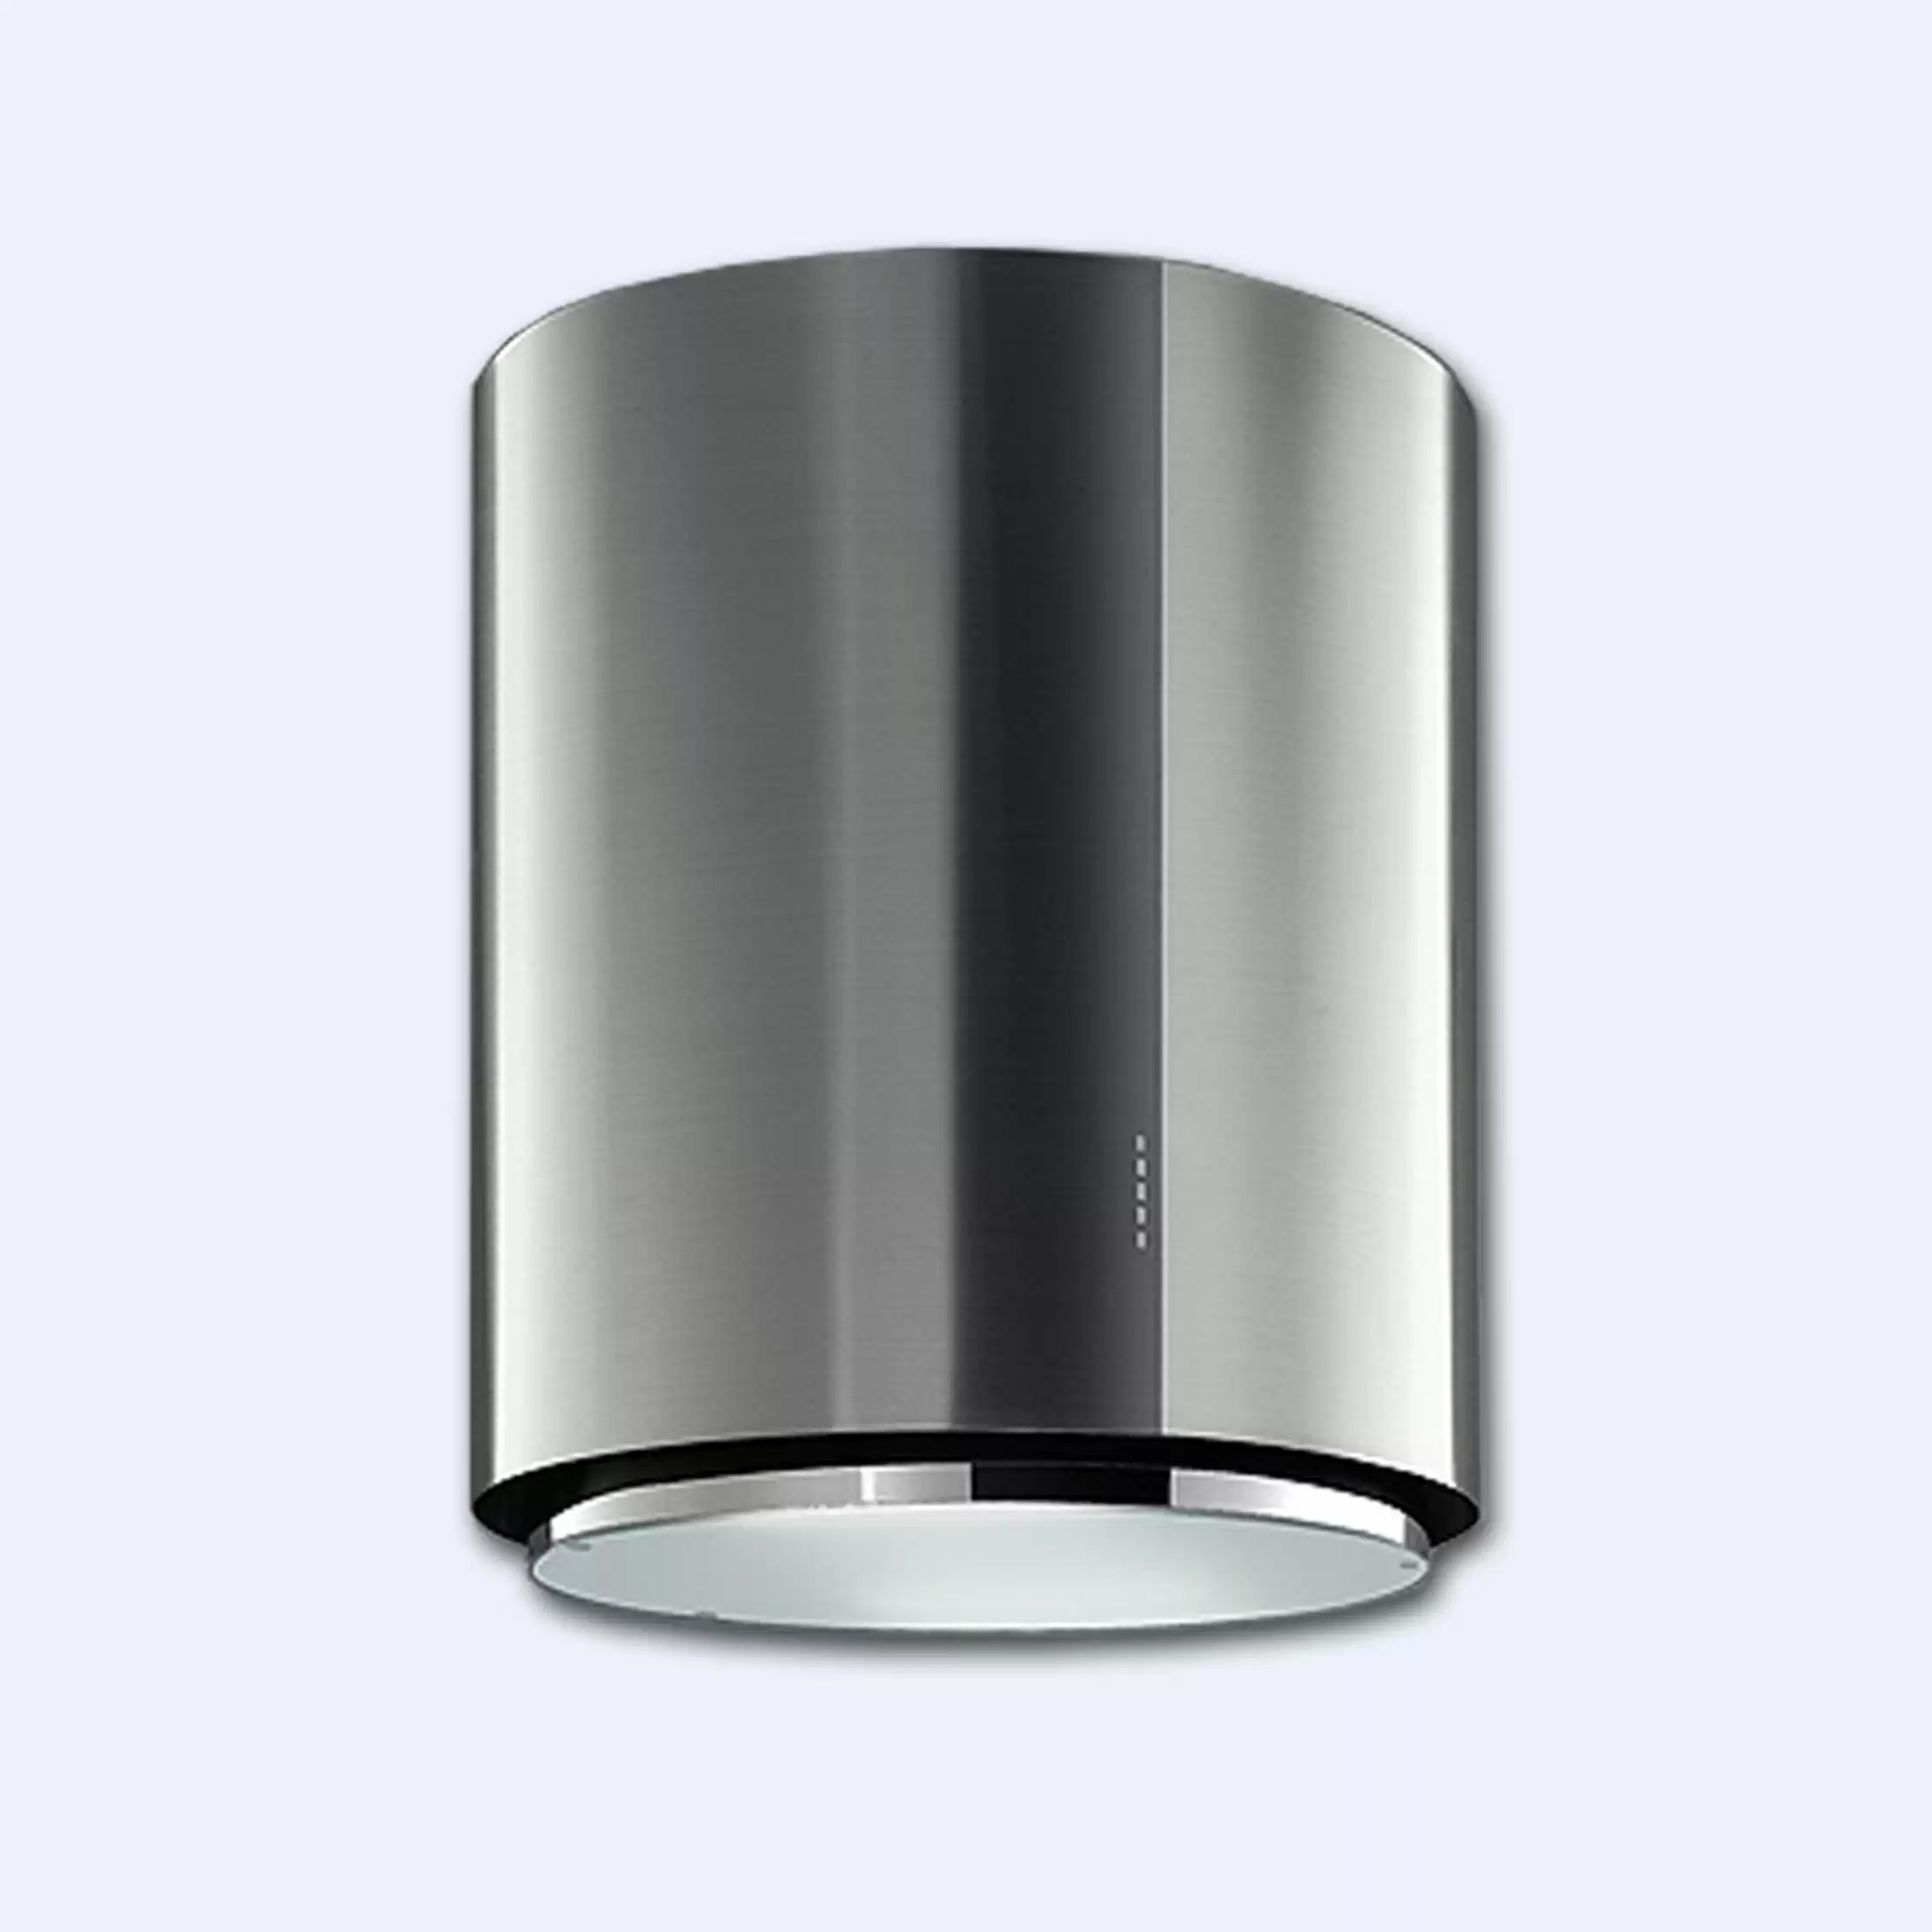 Кухонная вытяжка Falmec Design+ Ellittica 70 пристенная бриллиантовая+нерж.сталь AISI 304